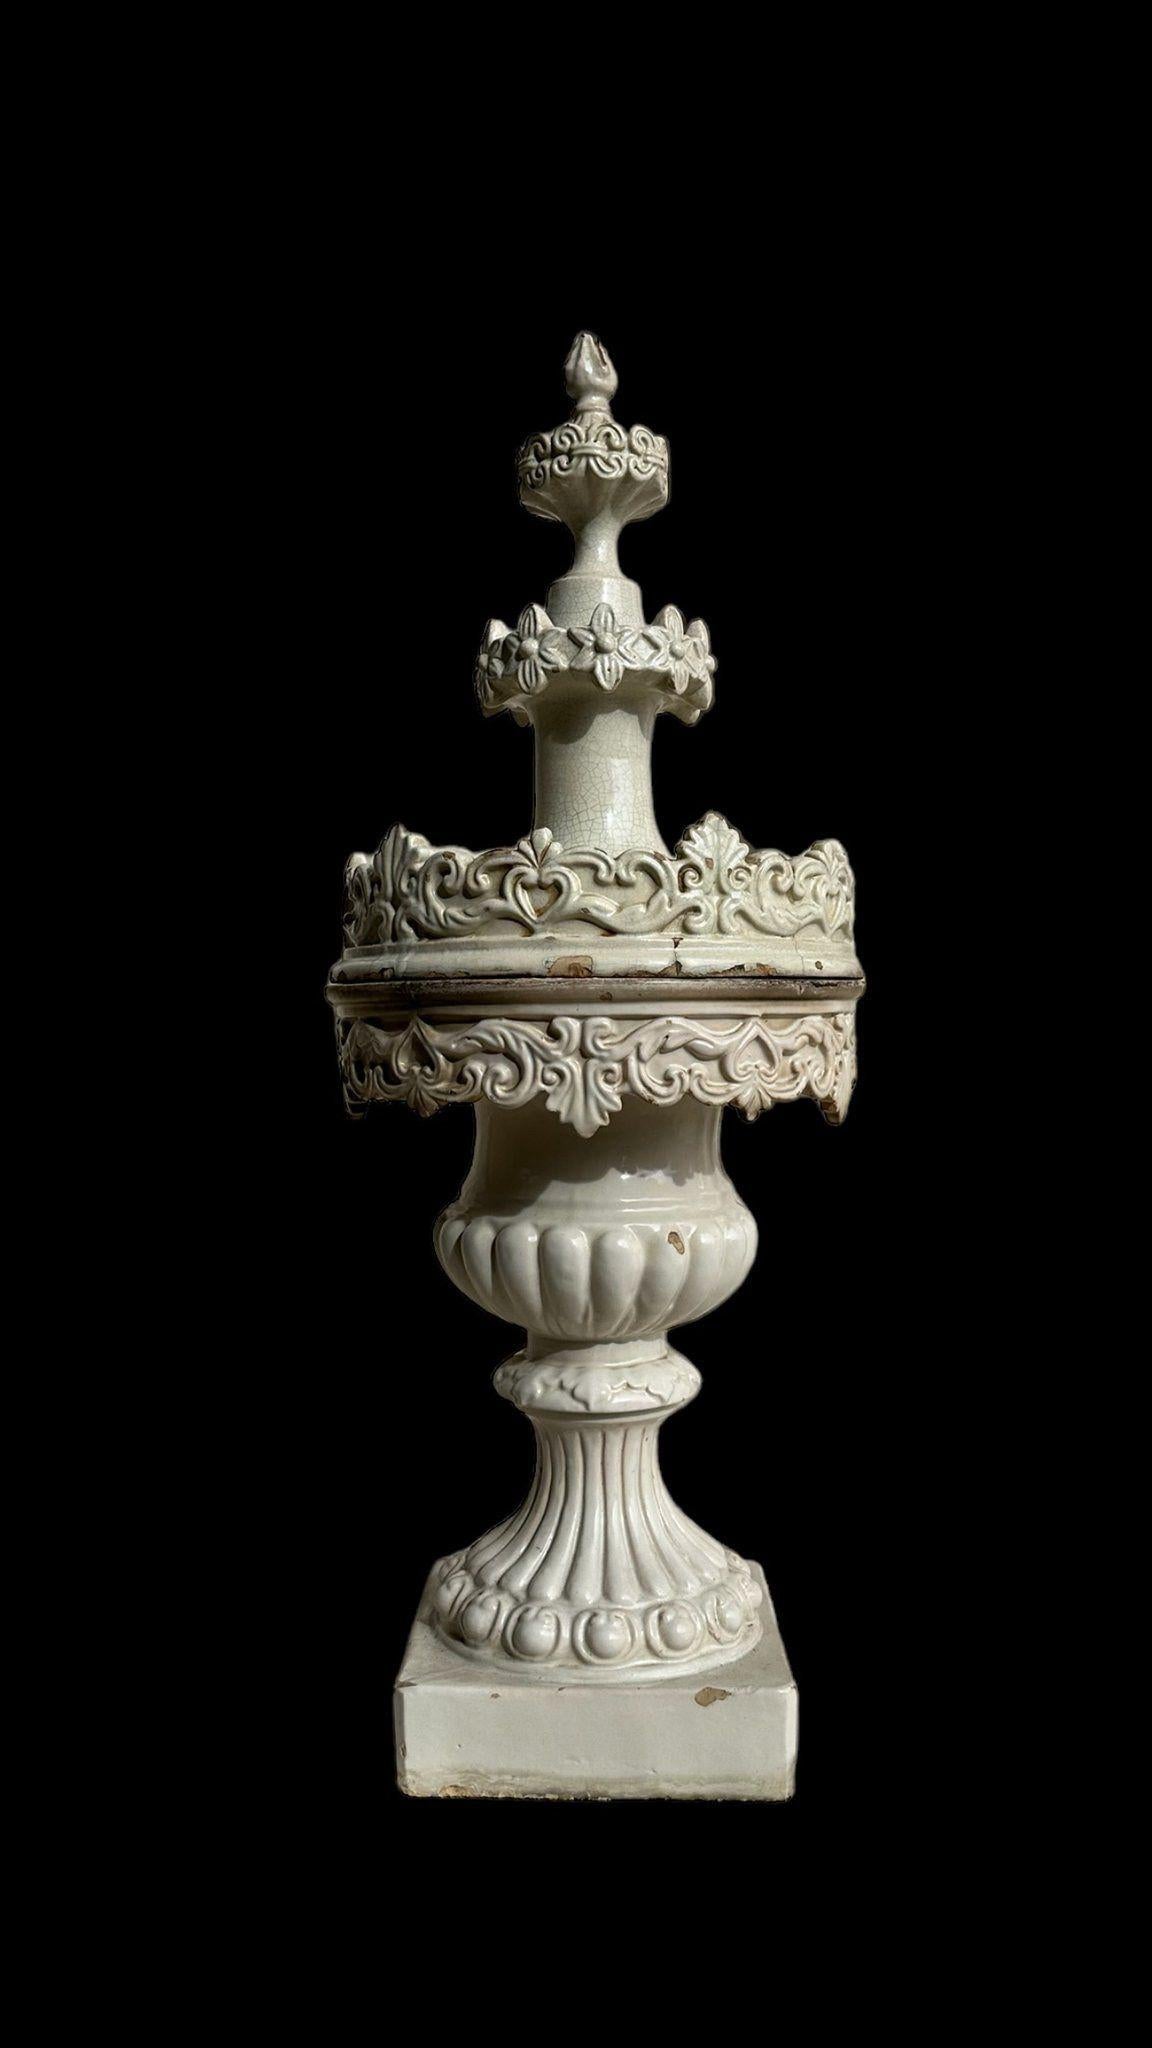 20th Century Pinnacle in Ceramic - Viuva Lamego For Sale